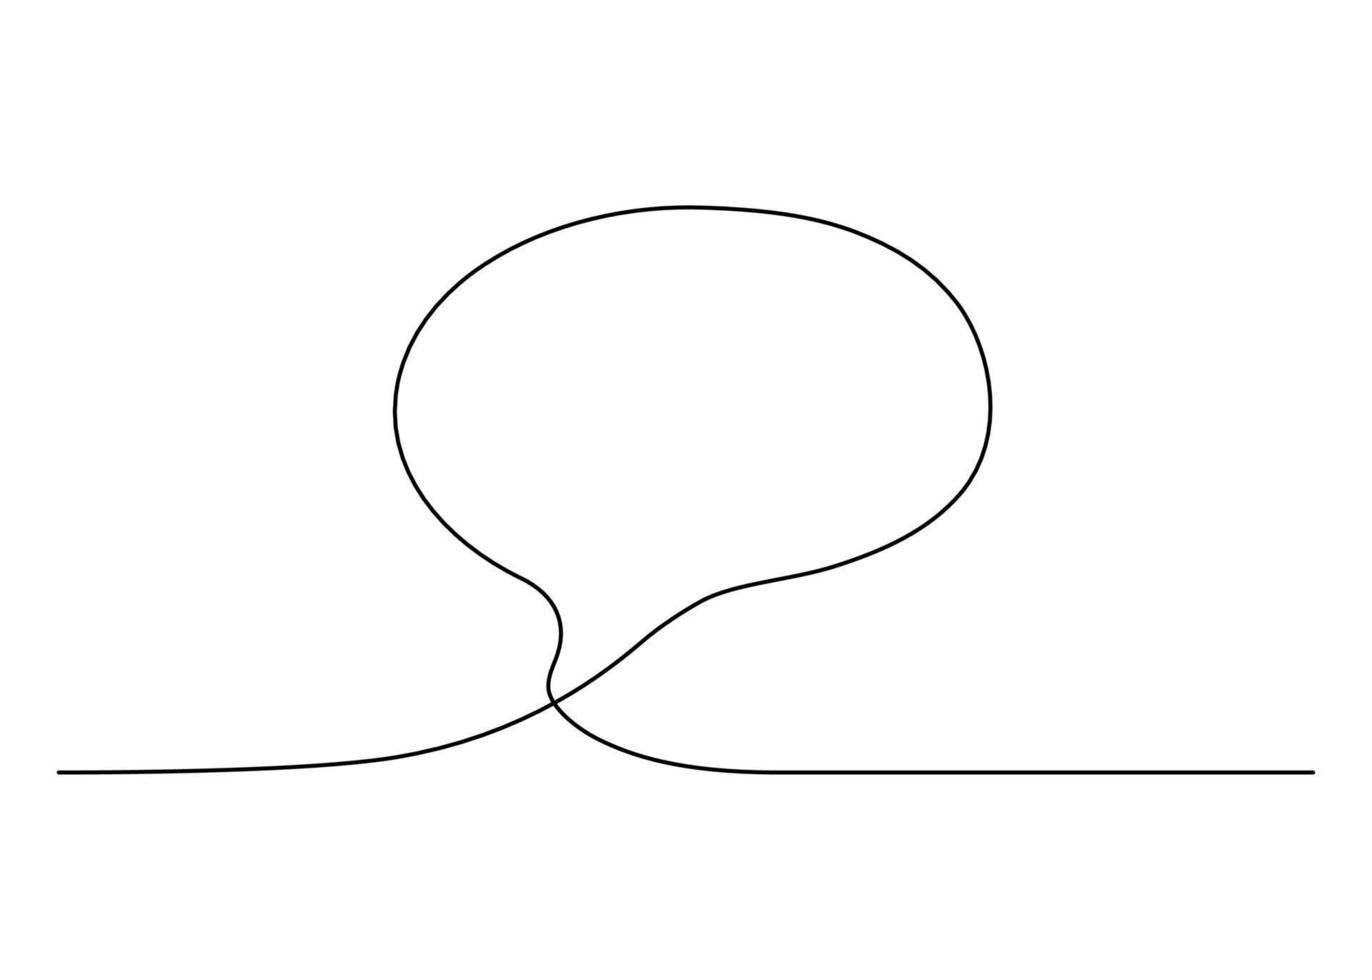 contour de bulle de parole, chat, dessin continu d'une ligne. boîte de cadre linéaire minimaliste graphique pour le texte. ballon pour parler. illustration vectorielle à une seule ligne vecteur